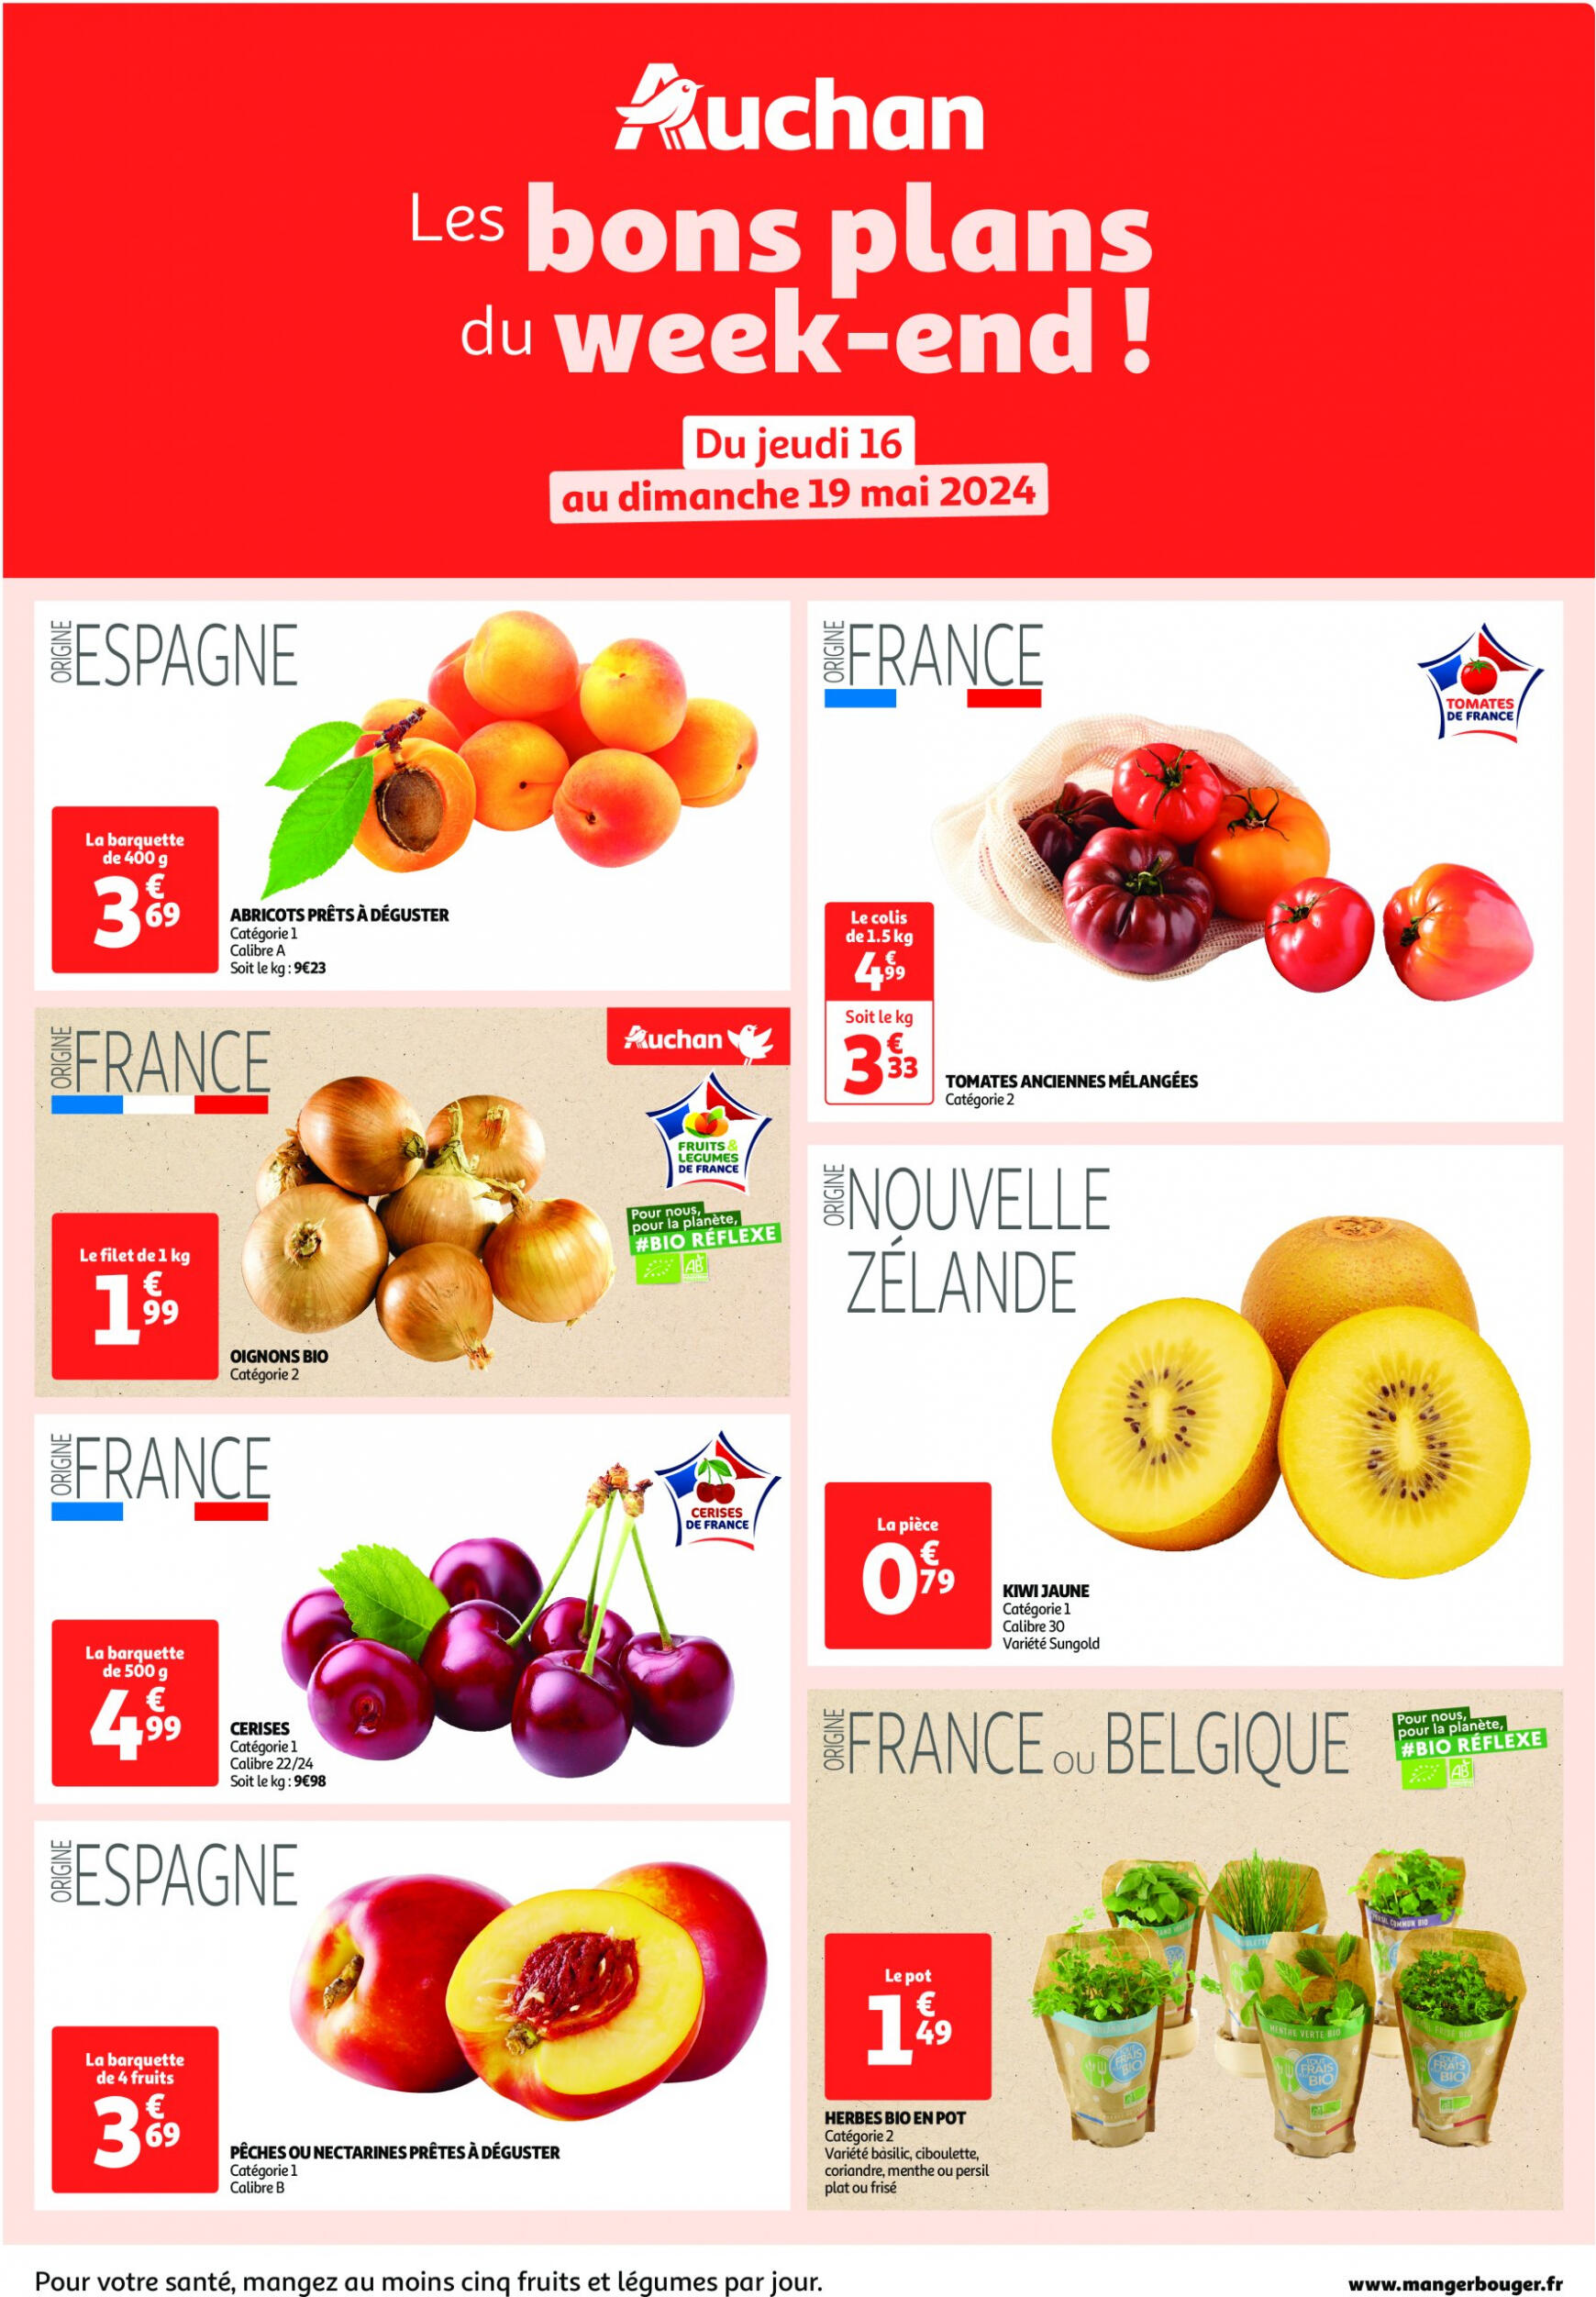 auchan - Auchan - Les bons plans du week-end dans votre hyper ! folder huidig 16.05. - 19.05. - page: 1